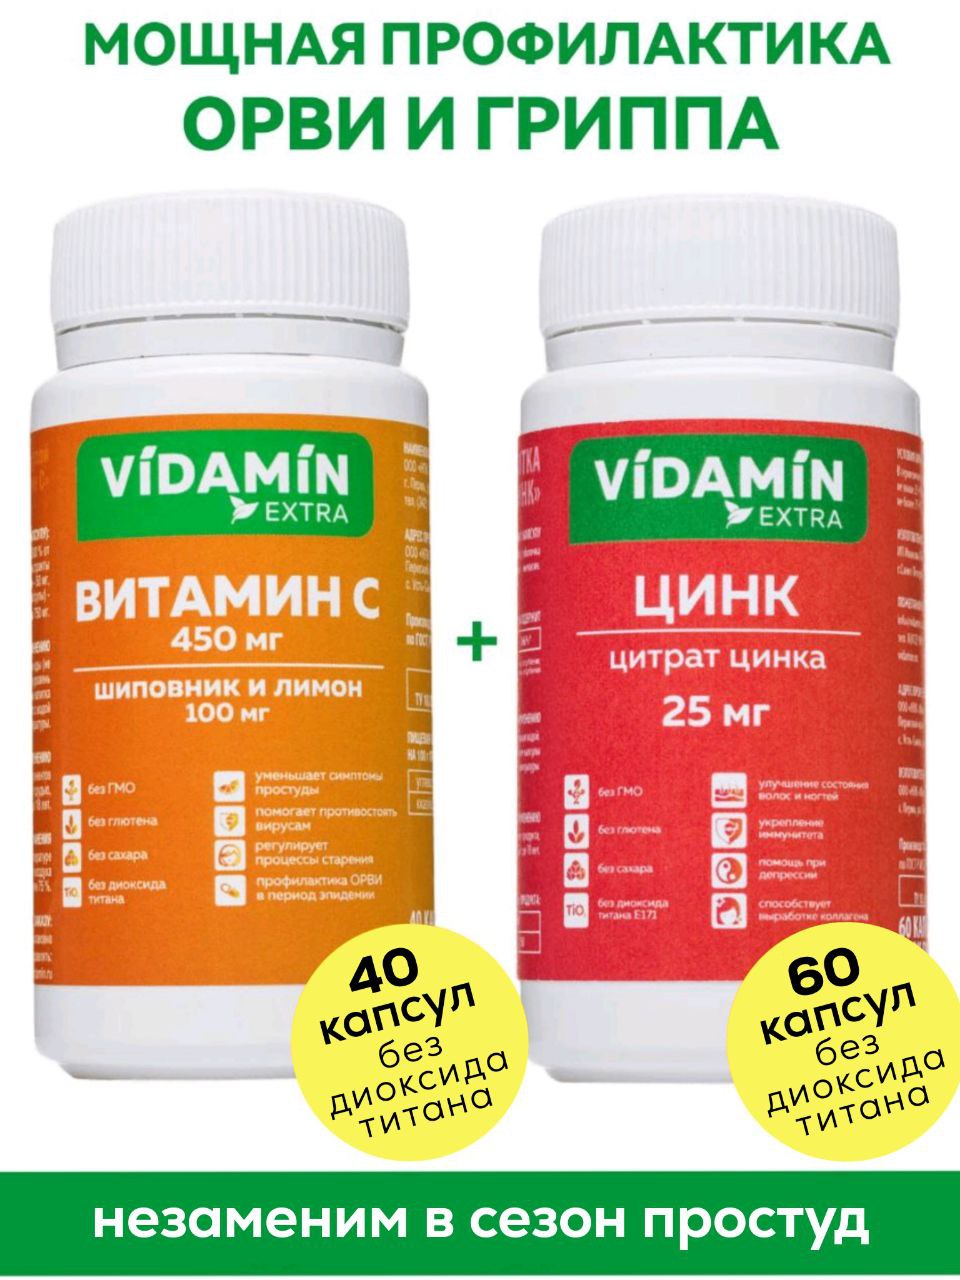 Набор Витамин С VIDAMIN EXTRА с шиповником,лимоном 40 капсул+Цинк цитрат 25 мг. 60 капсул